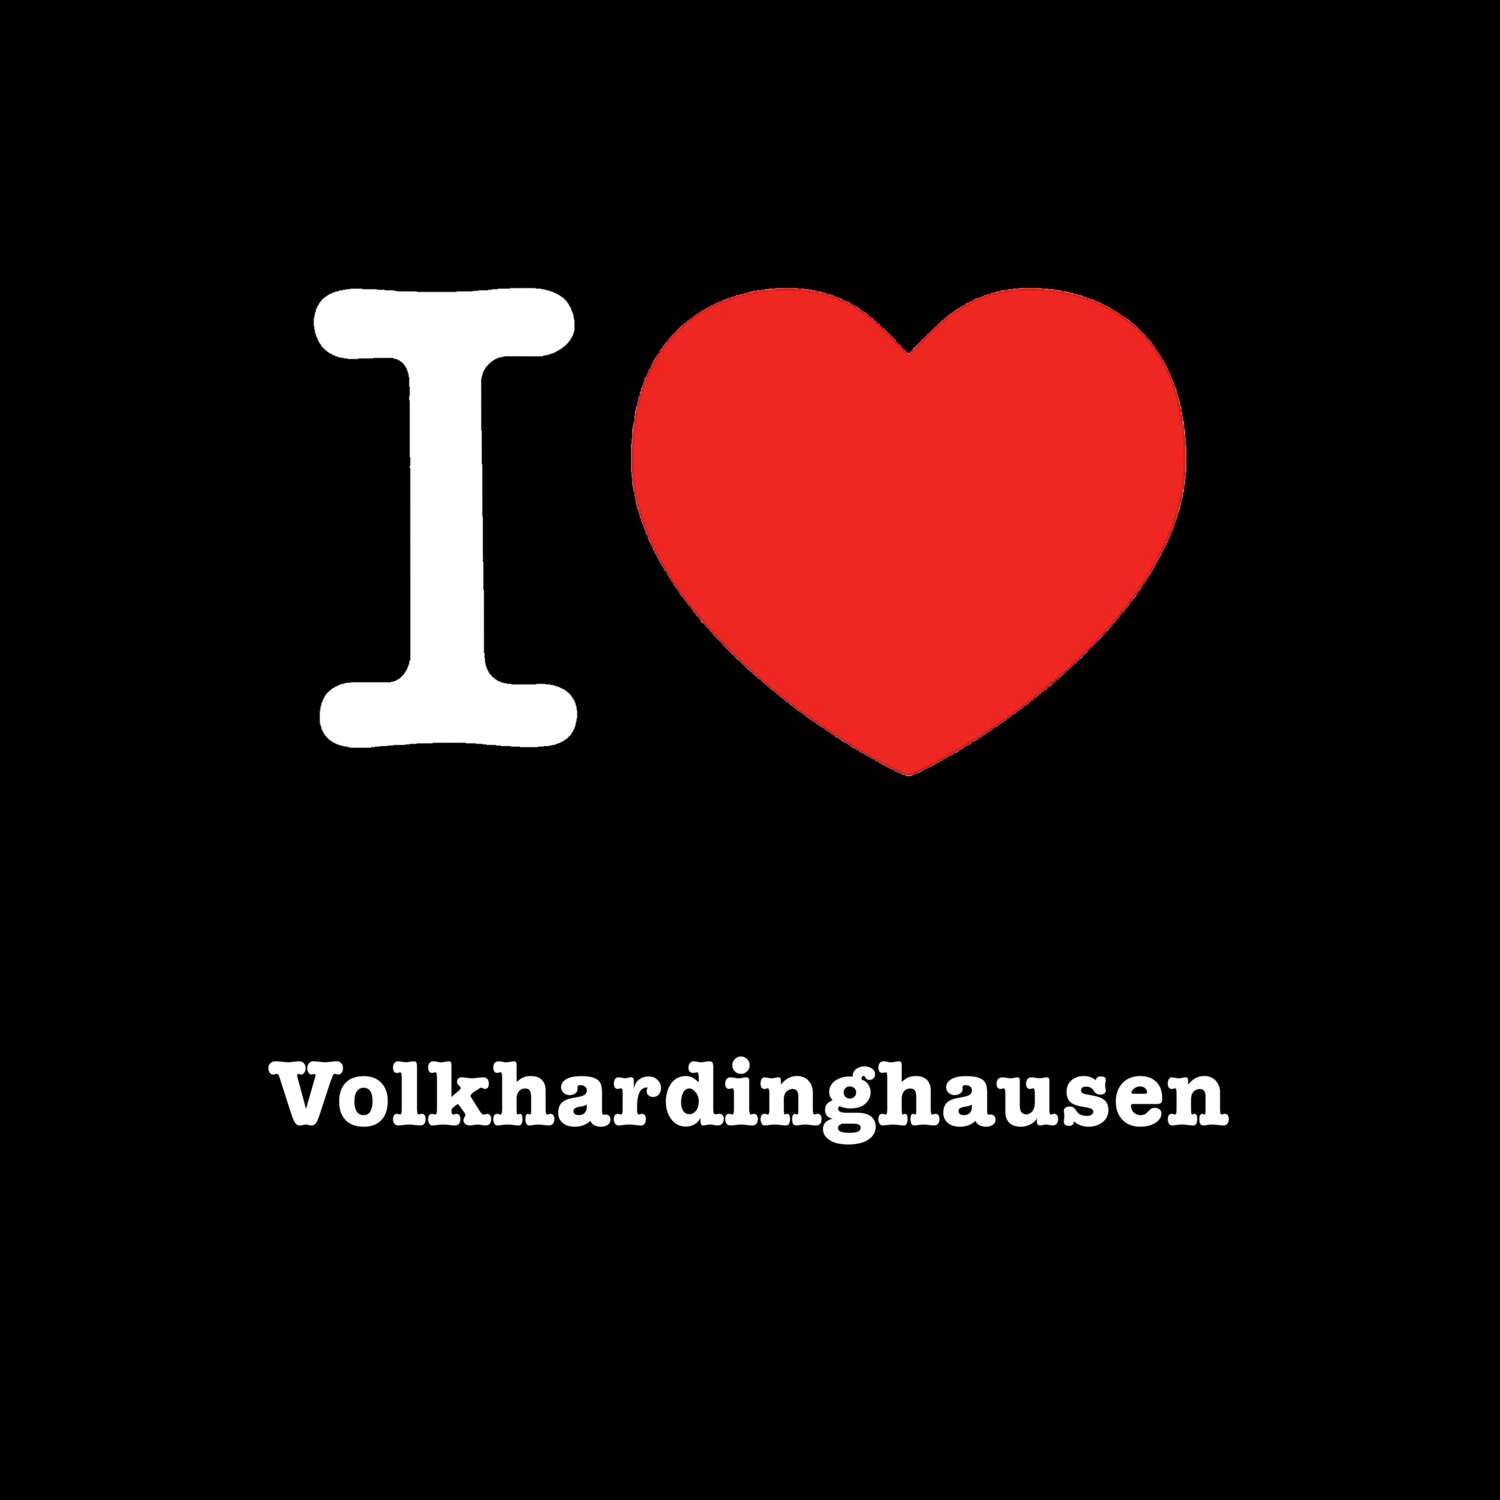 Volkhardinghausen T-Shirt »I love«